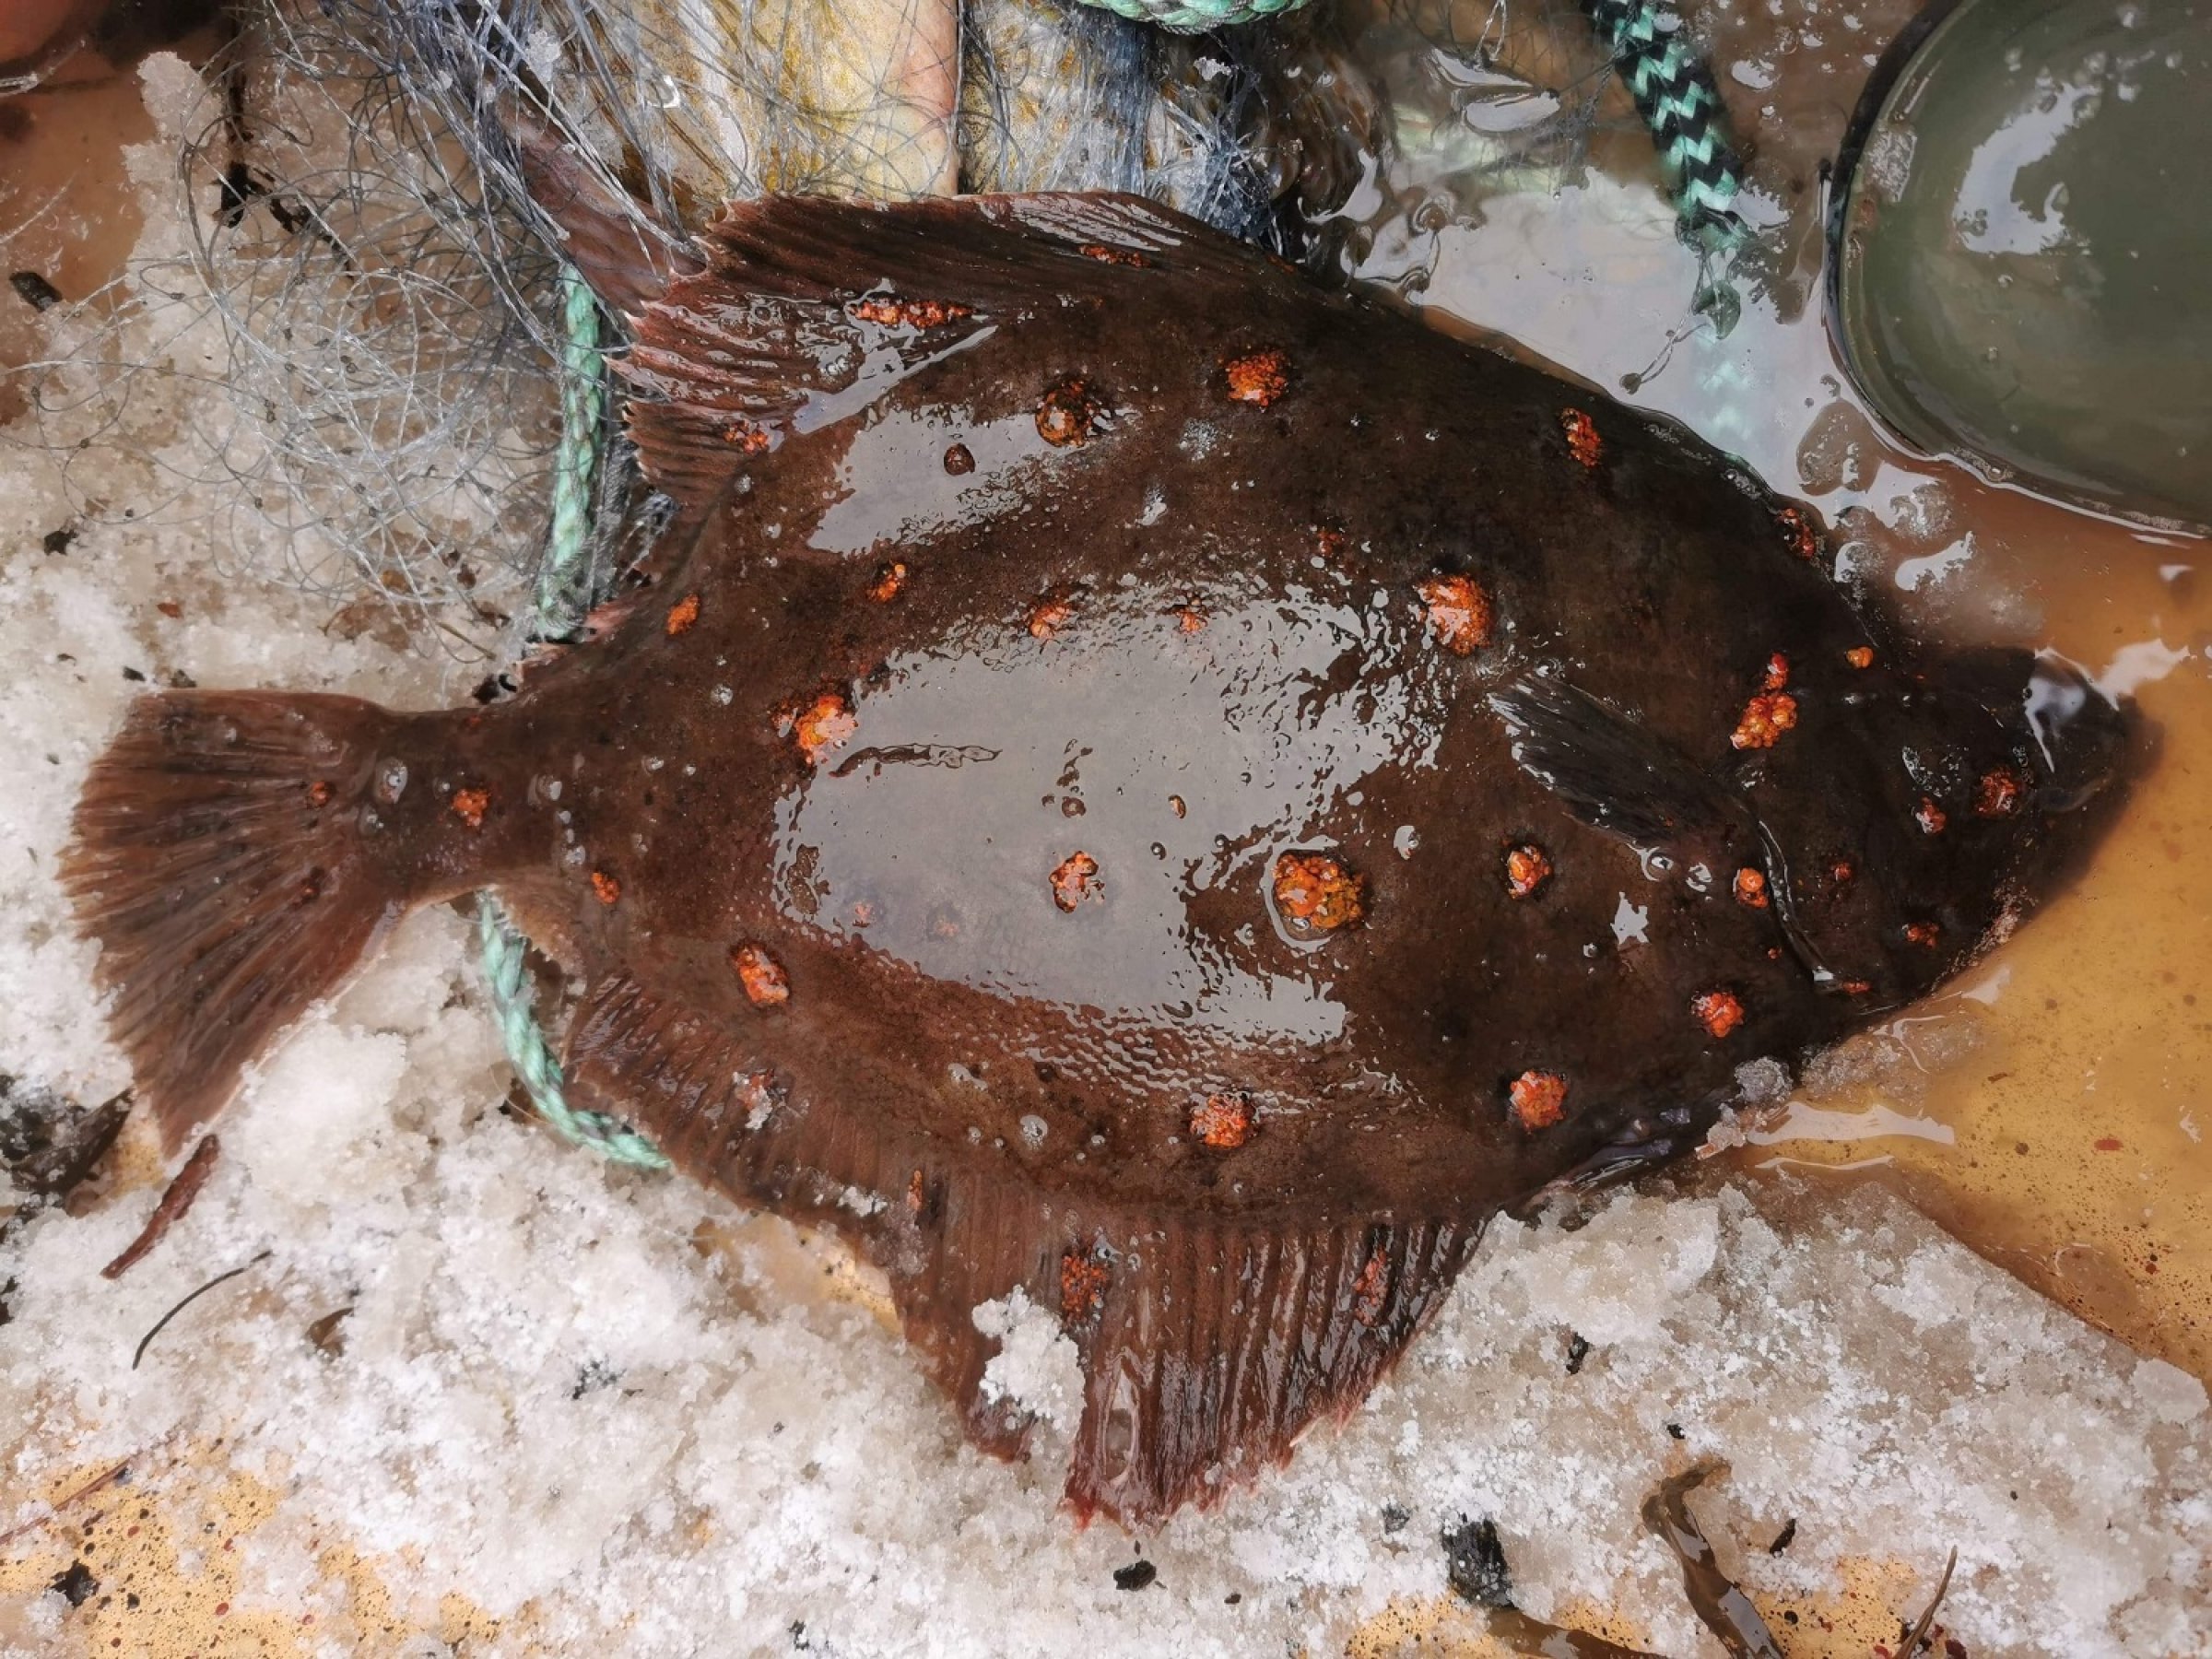 Kjønnsmoden hannfisk av rødspette med tydelig hevelse i de røde flekkene. Årsaken til hevelsen er ukjent. Foto: Tommy Tølche